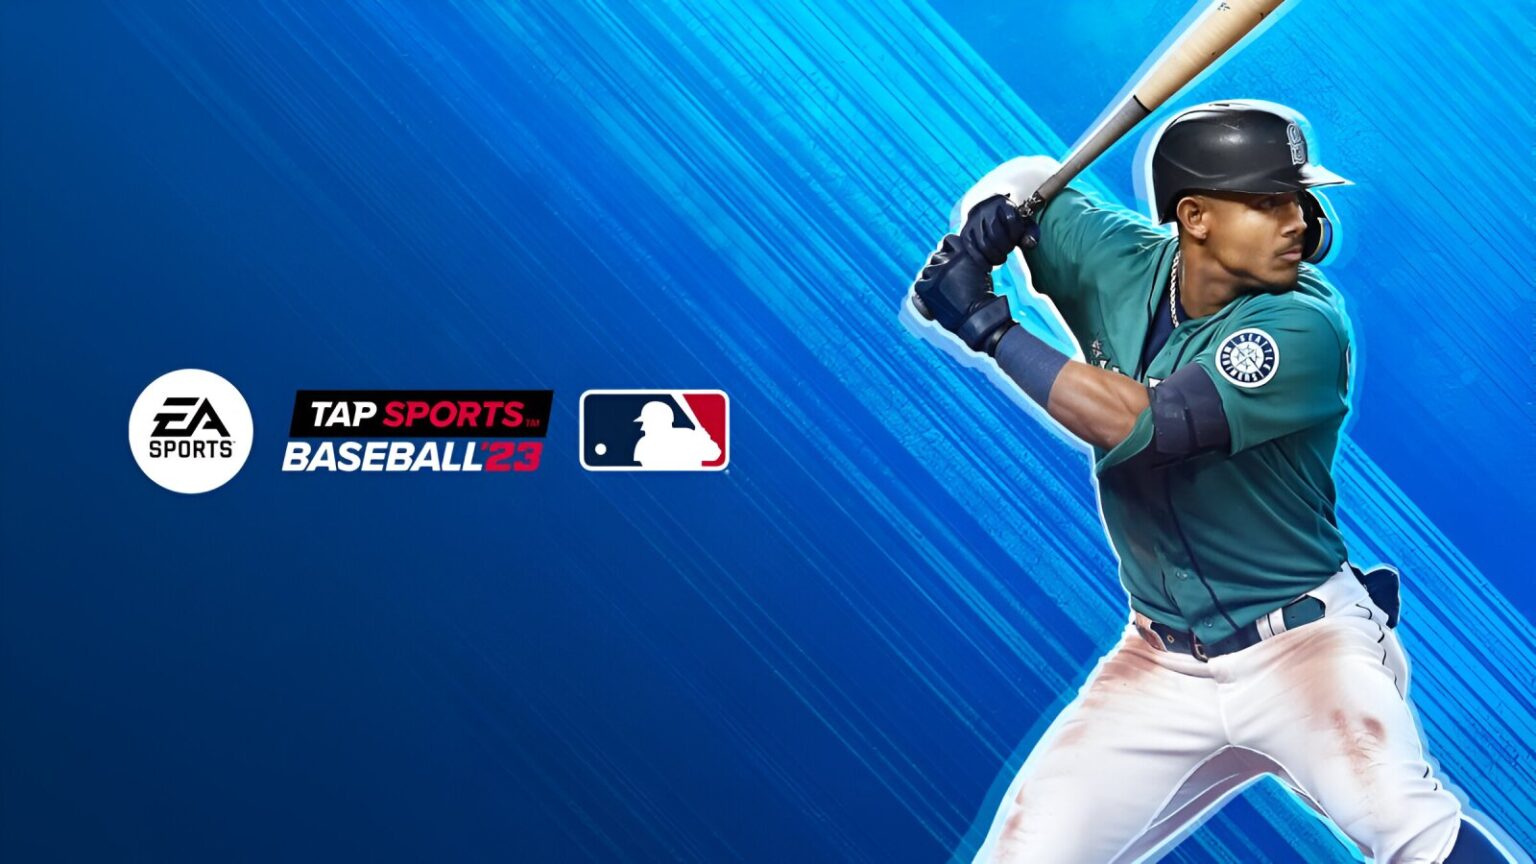 EA discontinues MLB Tap Sports Baseball 23